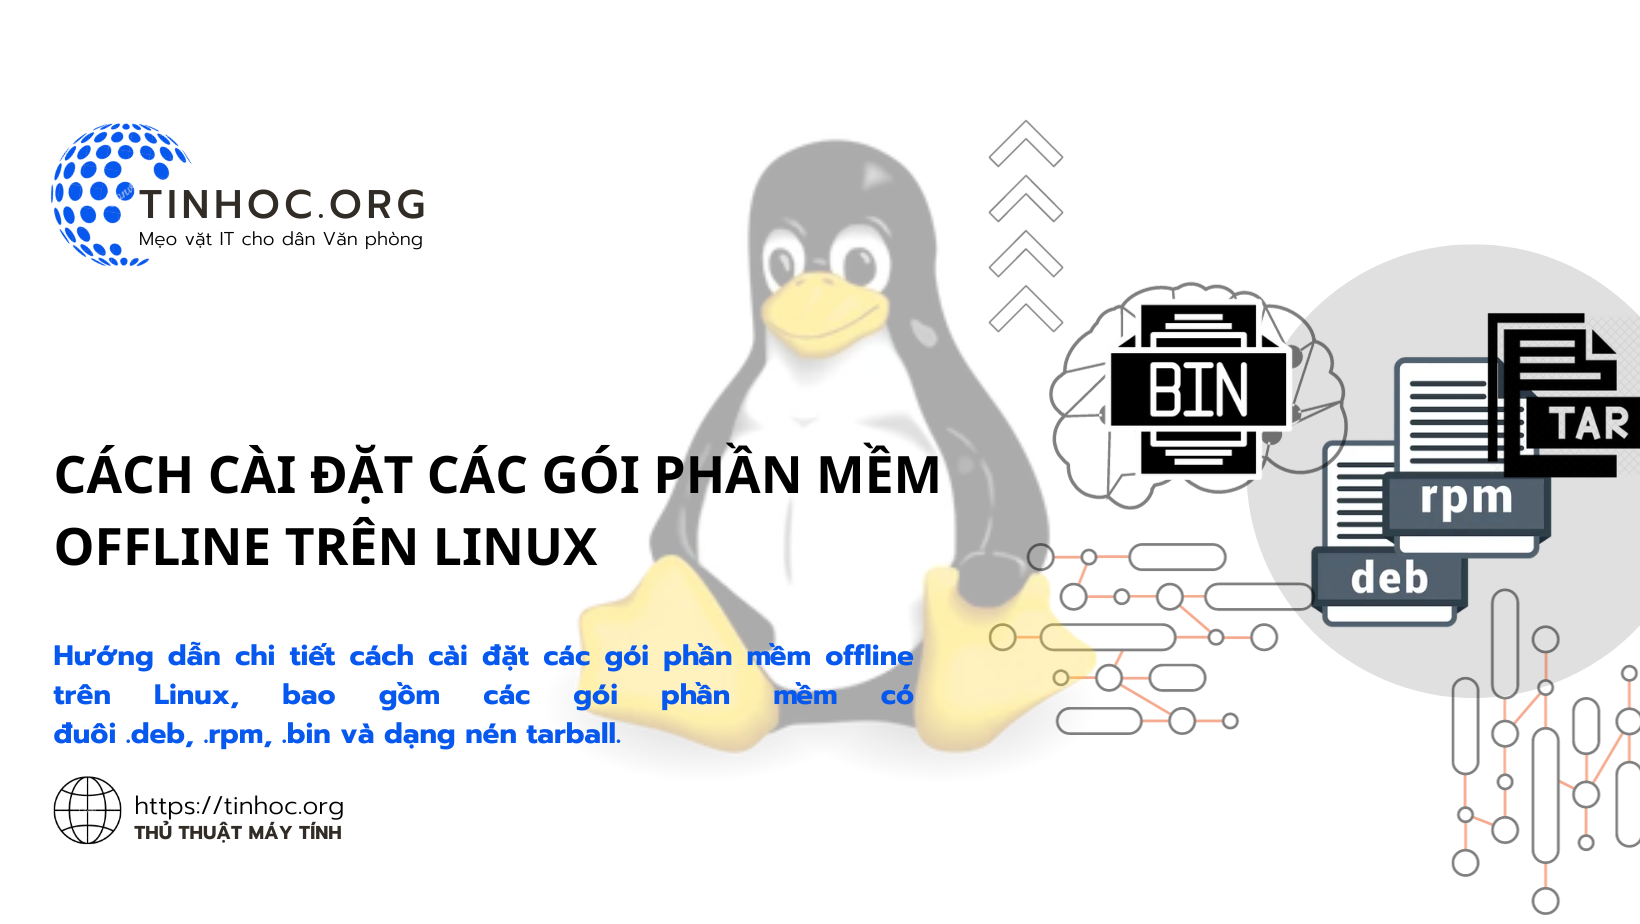 Hướng dẫn chi tiết cách cài đặt các gói phần mềm offline trên Linux, bao gồm các gói phần mềm có đuôi .deb, .rpm, .bin và dạng nén tarball.